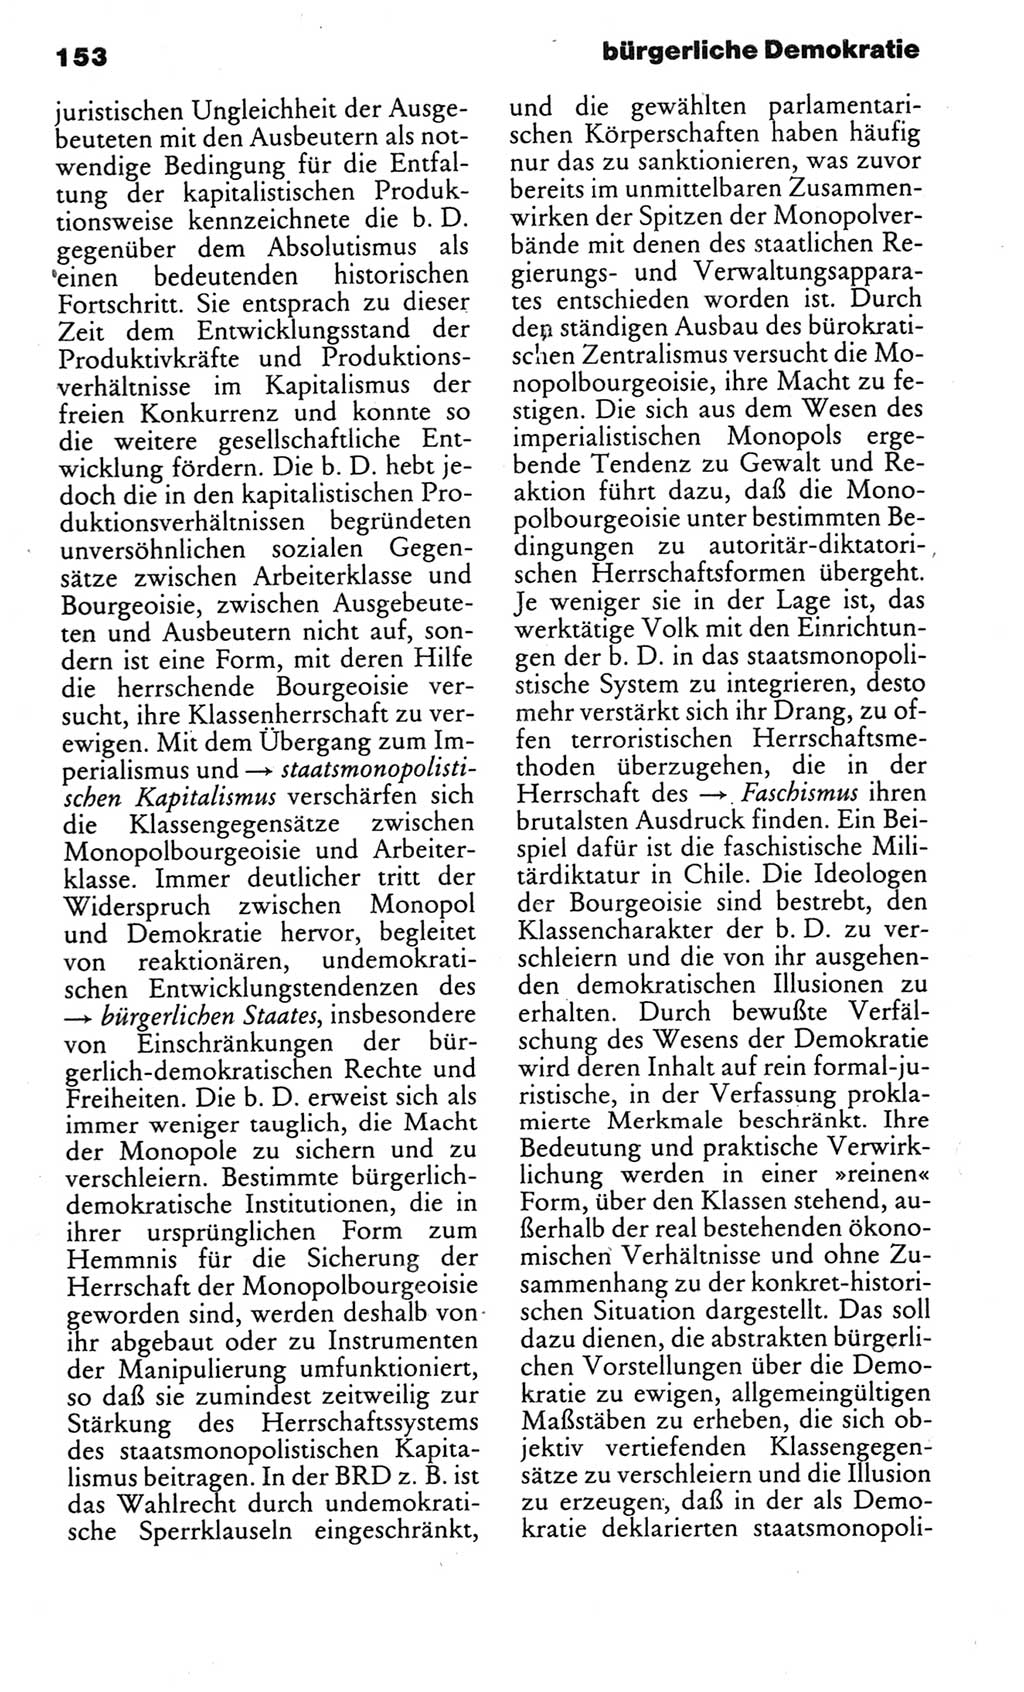 Kleines politisches Wörterbuch [Deutsche Demokratische Republik (DDR)] 1985, Seite 153 (Kl. pol. Wb. DDR 1985, S. 153)